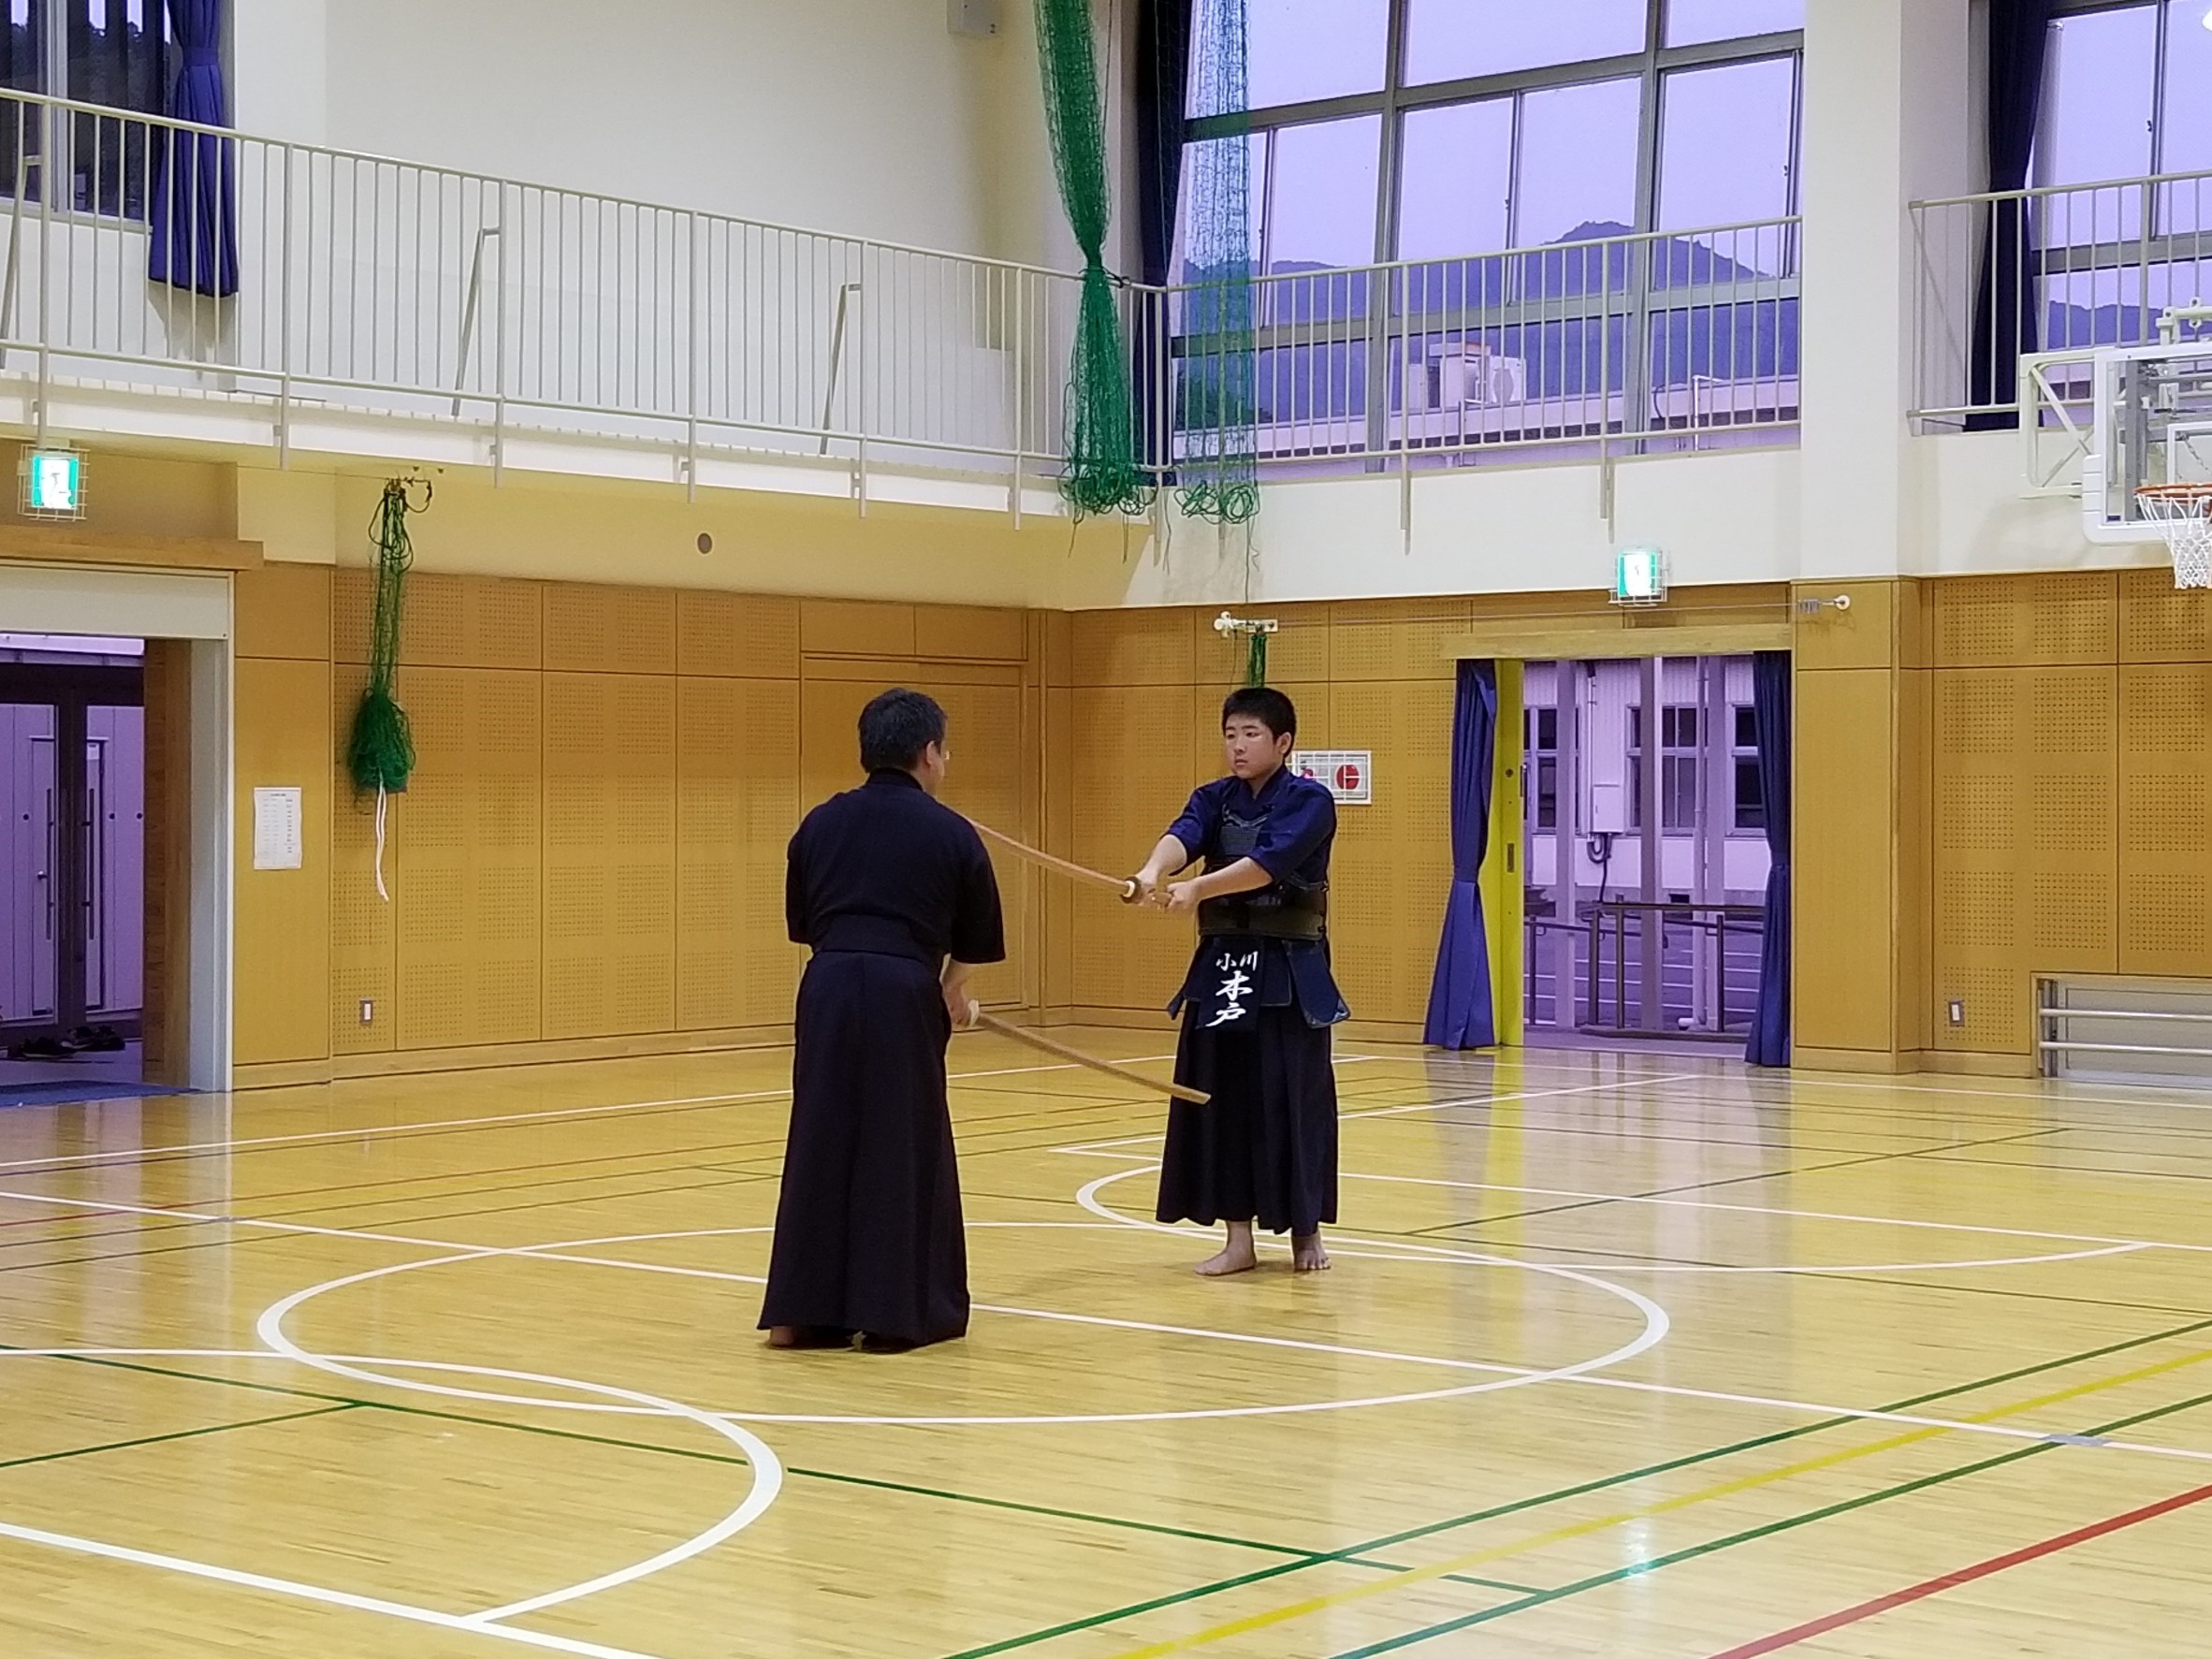 日本 剣道 形 1 本目 日本剣道形三本目の解説と動画 意味を知って昇段 実戦に活かすには